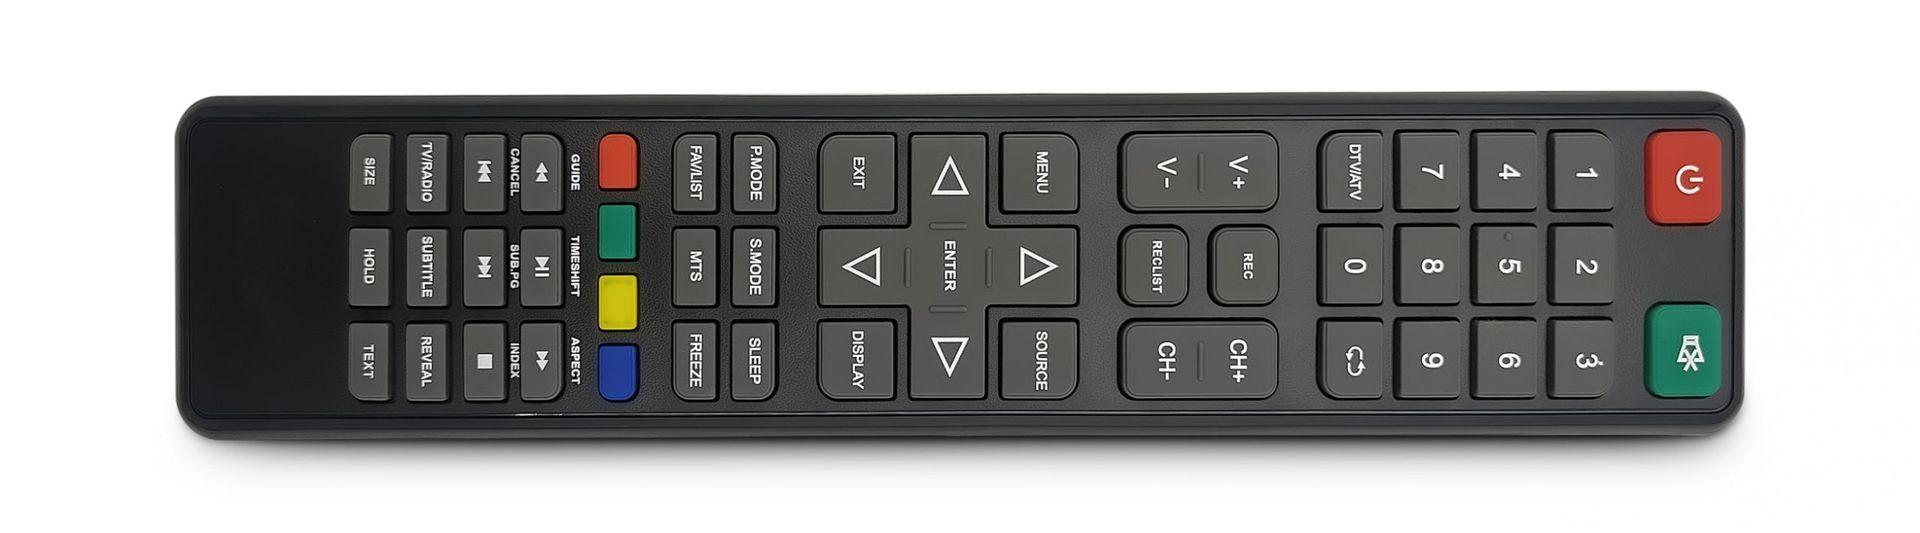 OC002 mando a distancia para Grunkel, Inves y otras marcas.